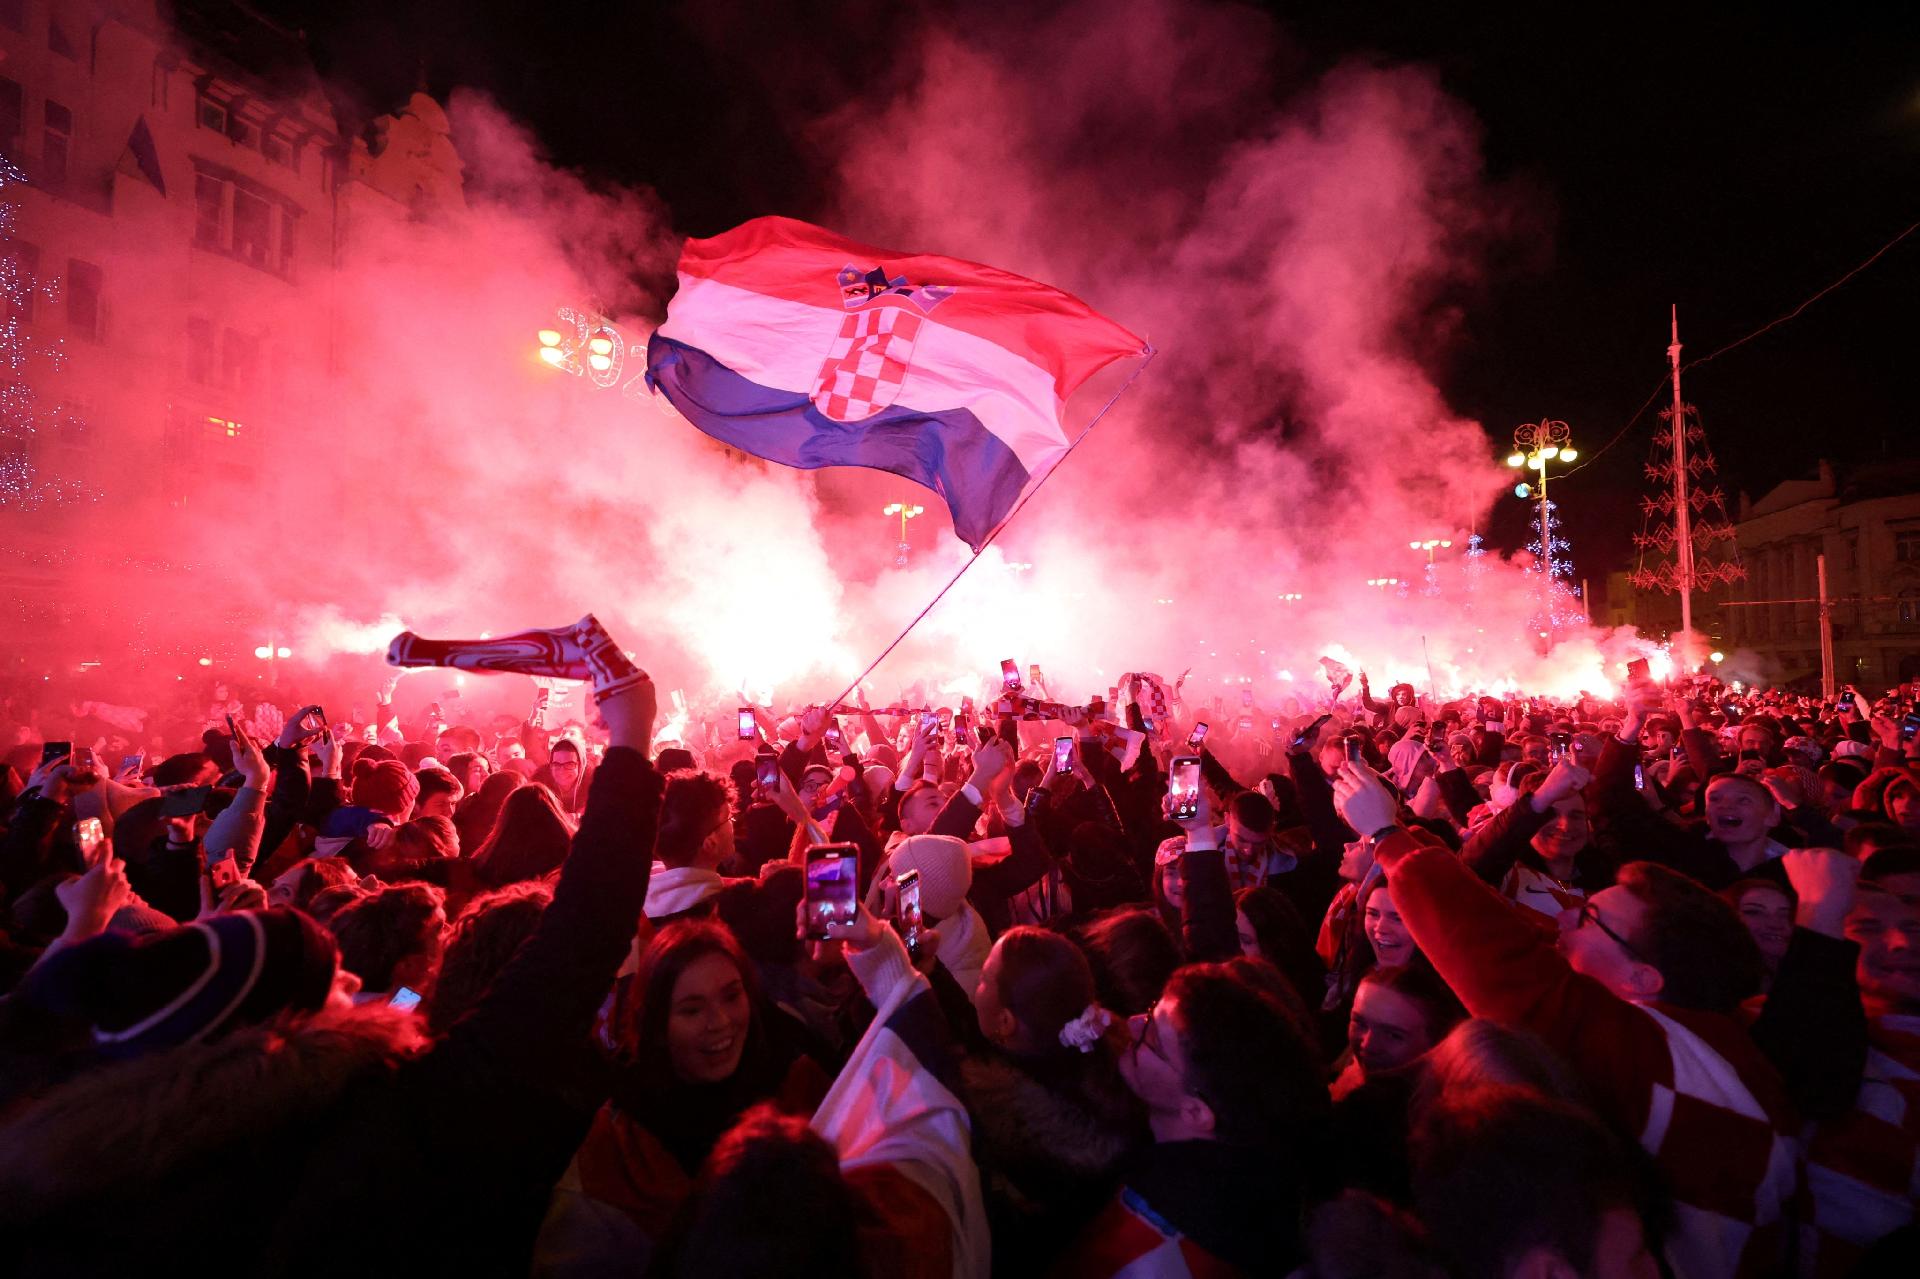 Em Zagreb, torcedores reagem com orgulho e decepção após derrota croata